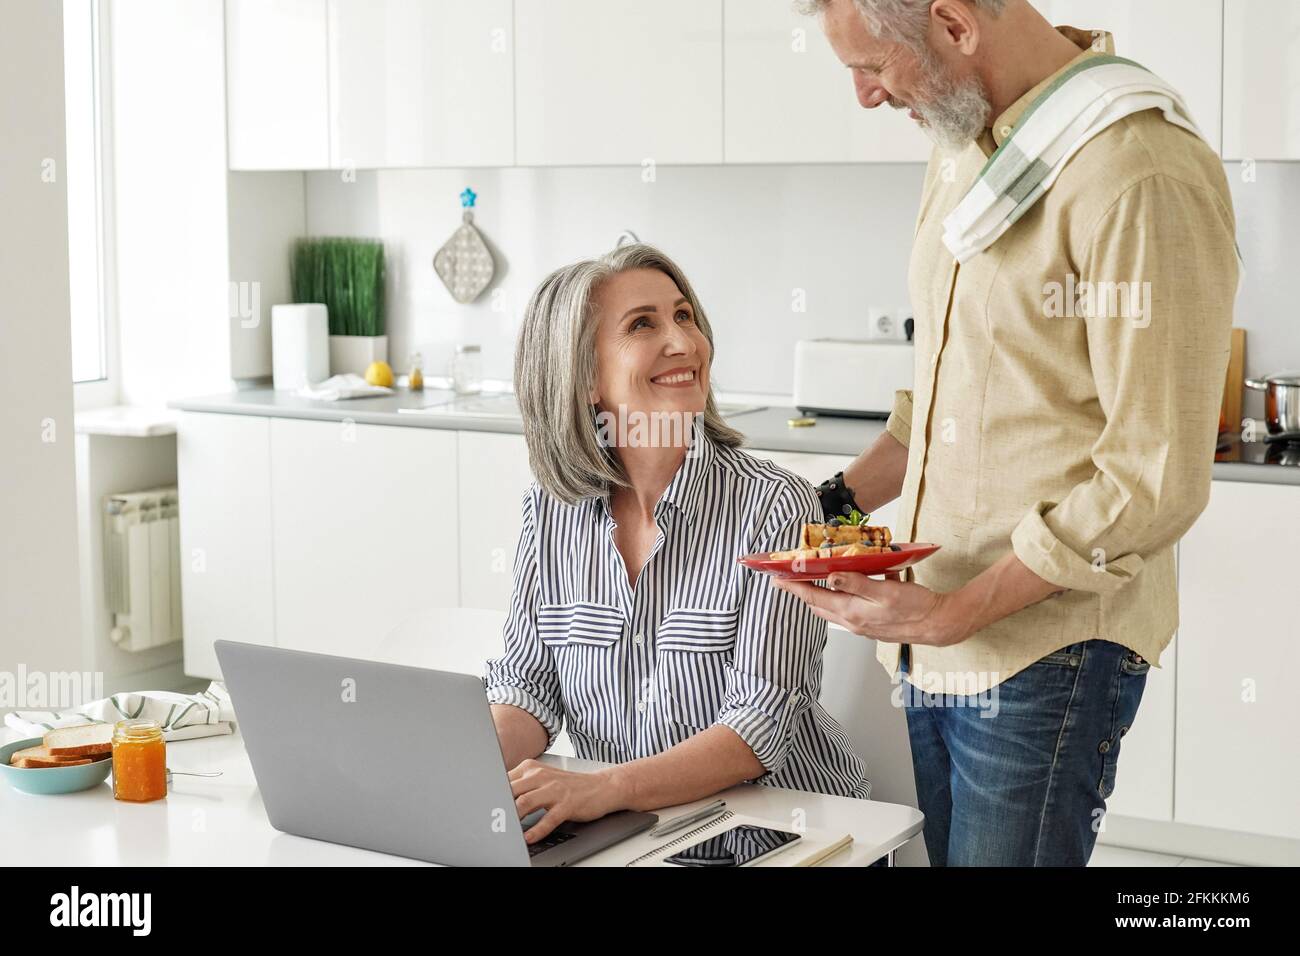 Der ältere Mann bereitete dem glücklichen Mann, der vom Heimbüro aus arbeitete, das Frühstück zu. Stockfoto